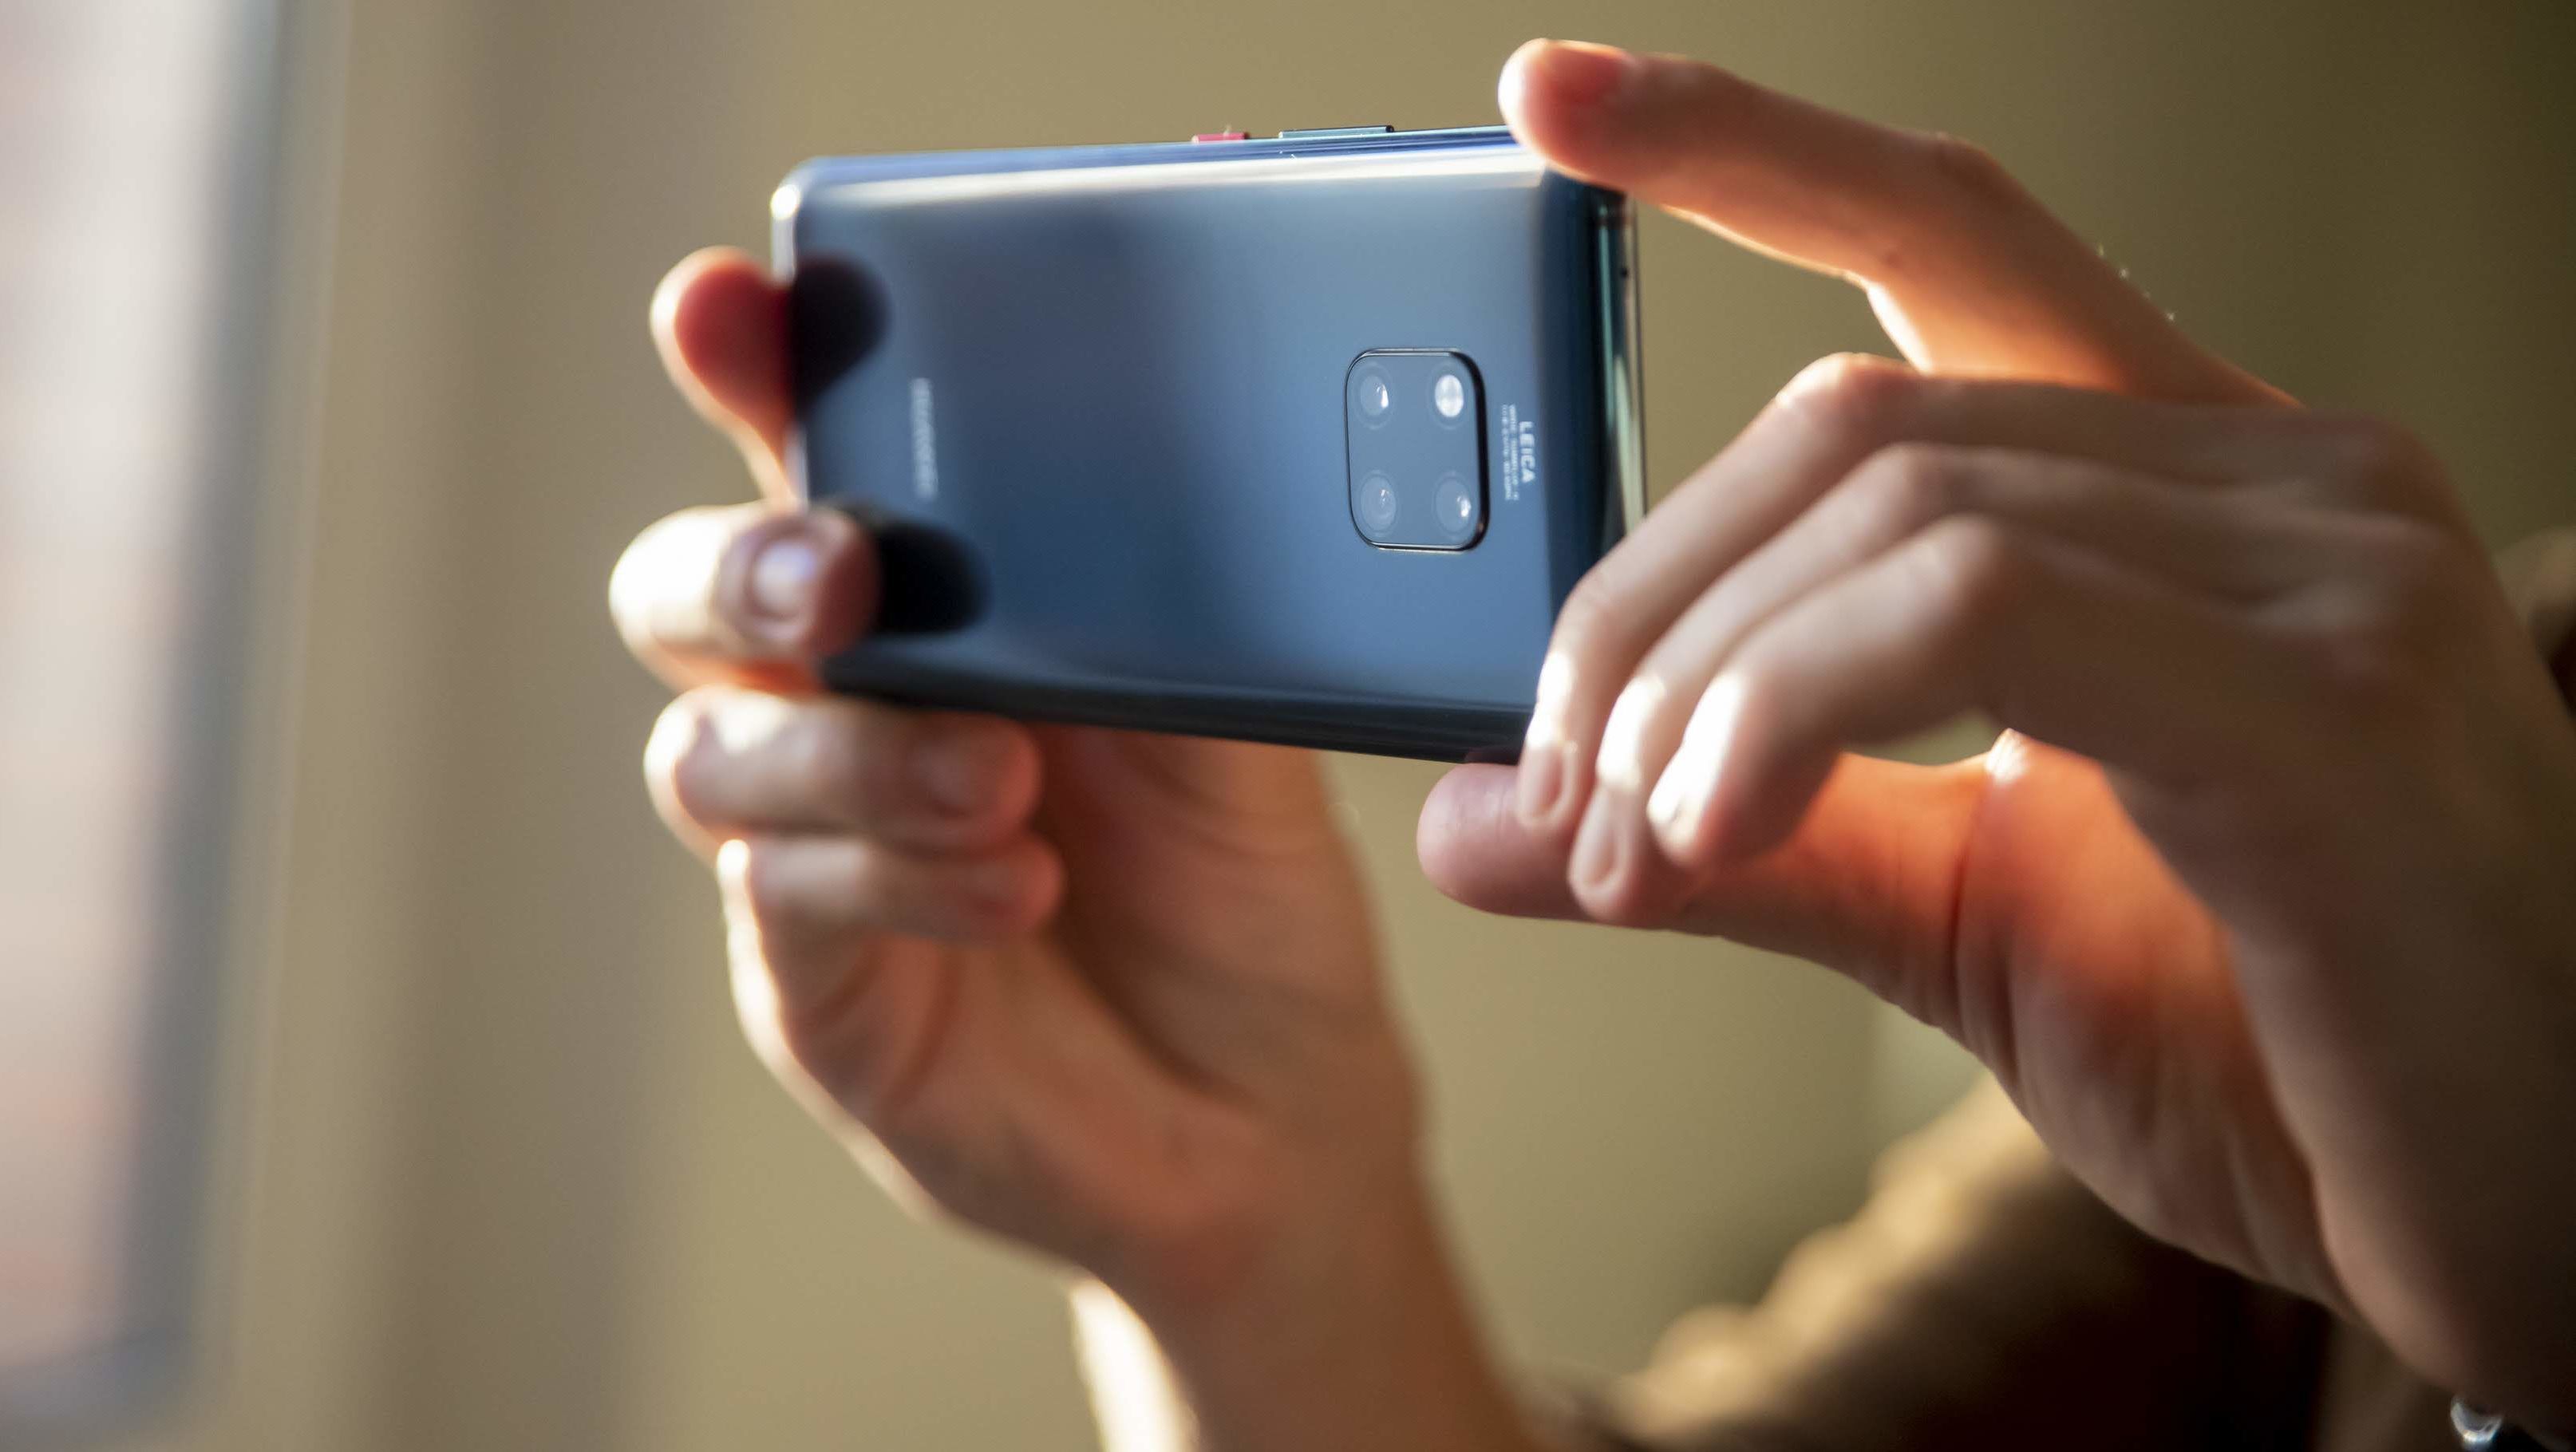 Ezekre a Huawei telefonokra érkezik meg először az új Android